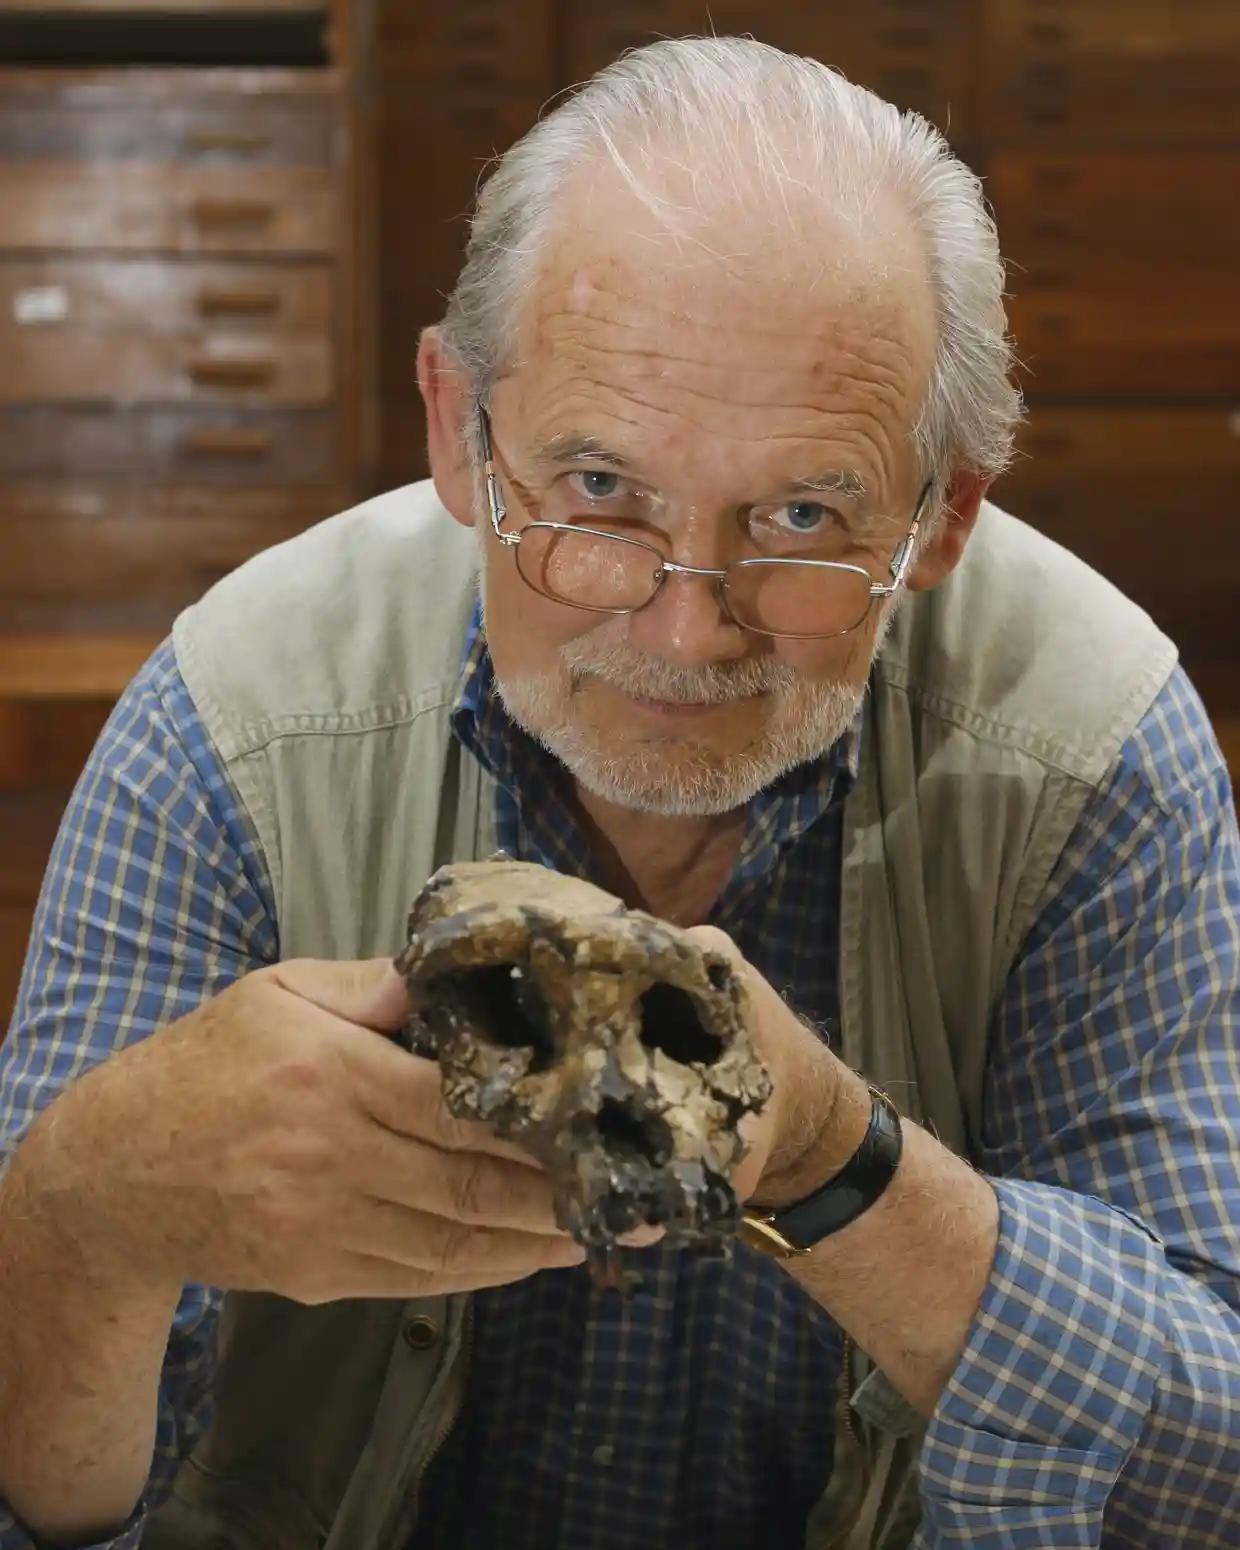 الأستاذ ميشيل برونيه من جامعة بواتييه يحمل جمجمة توماي